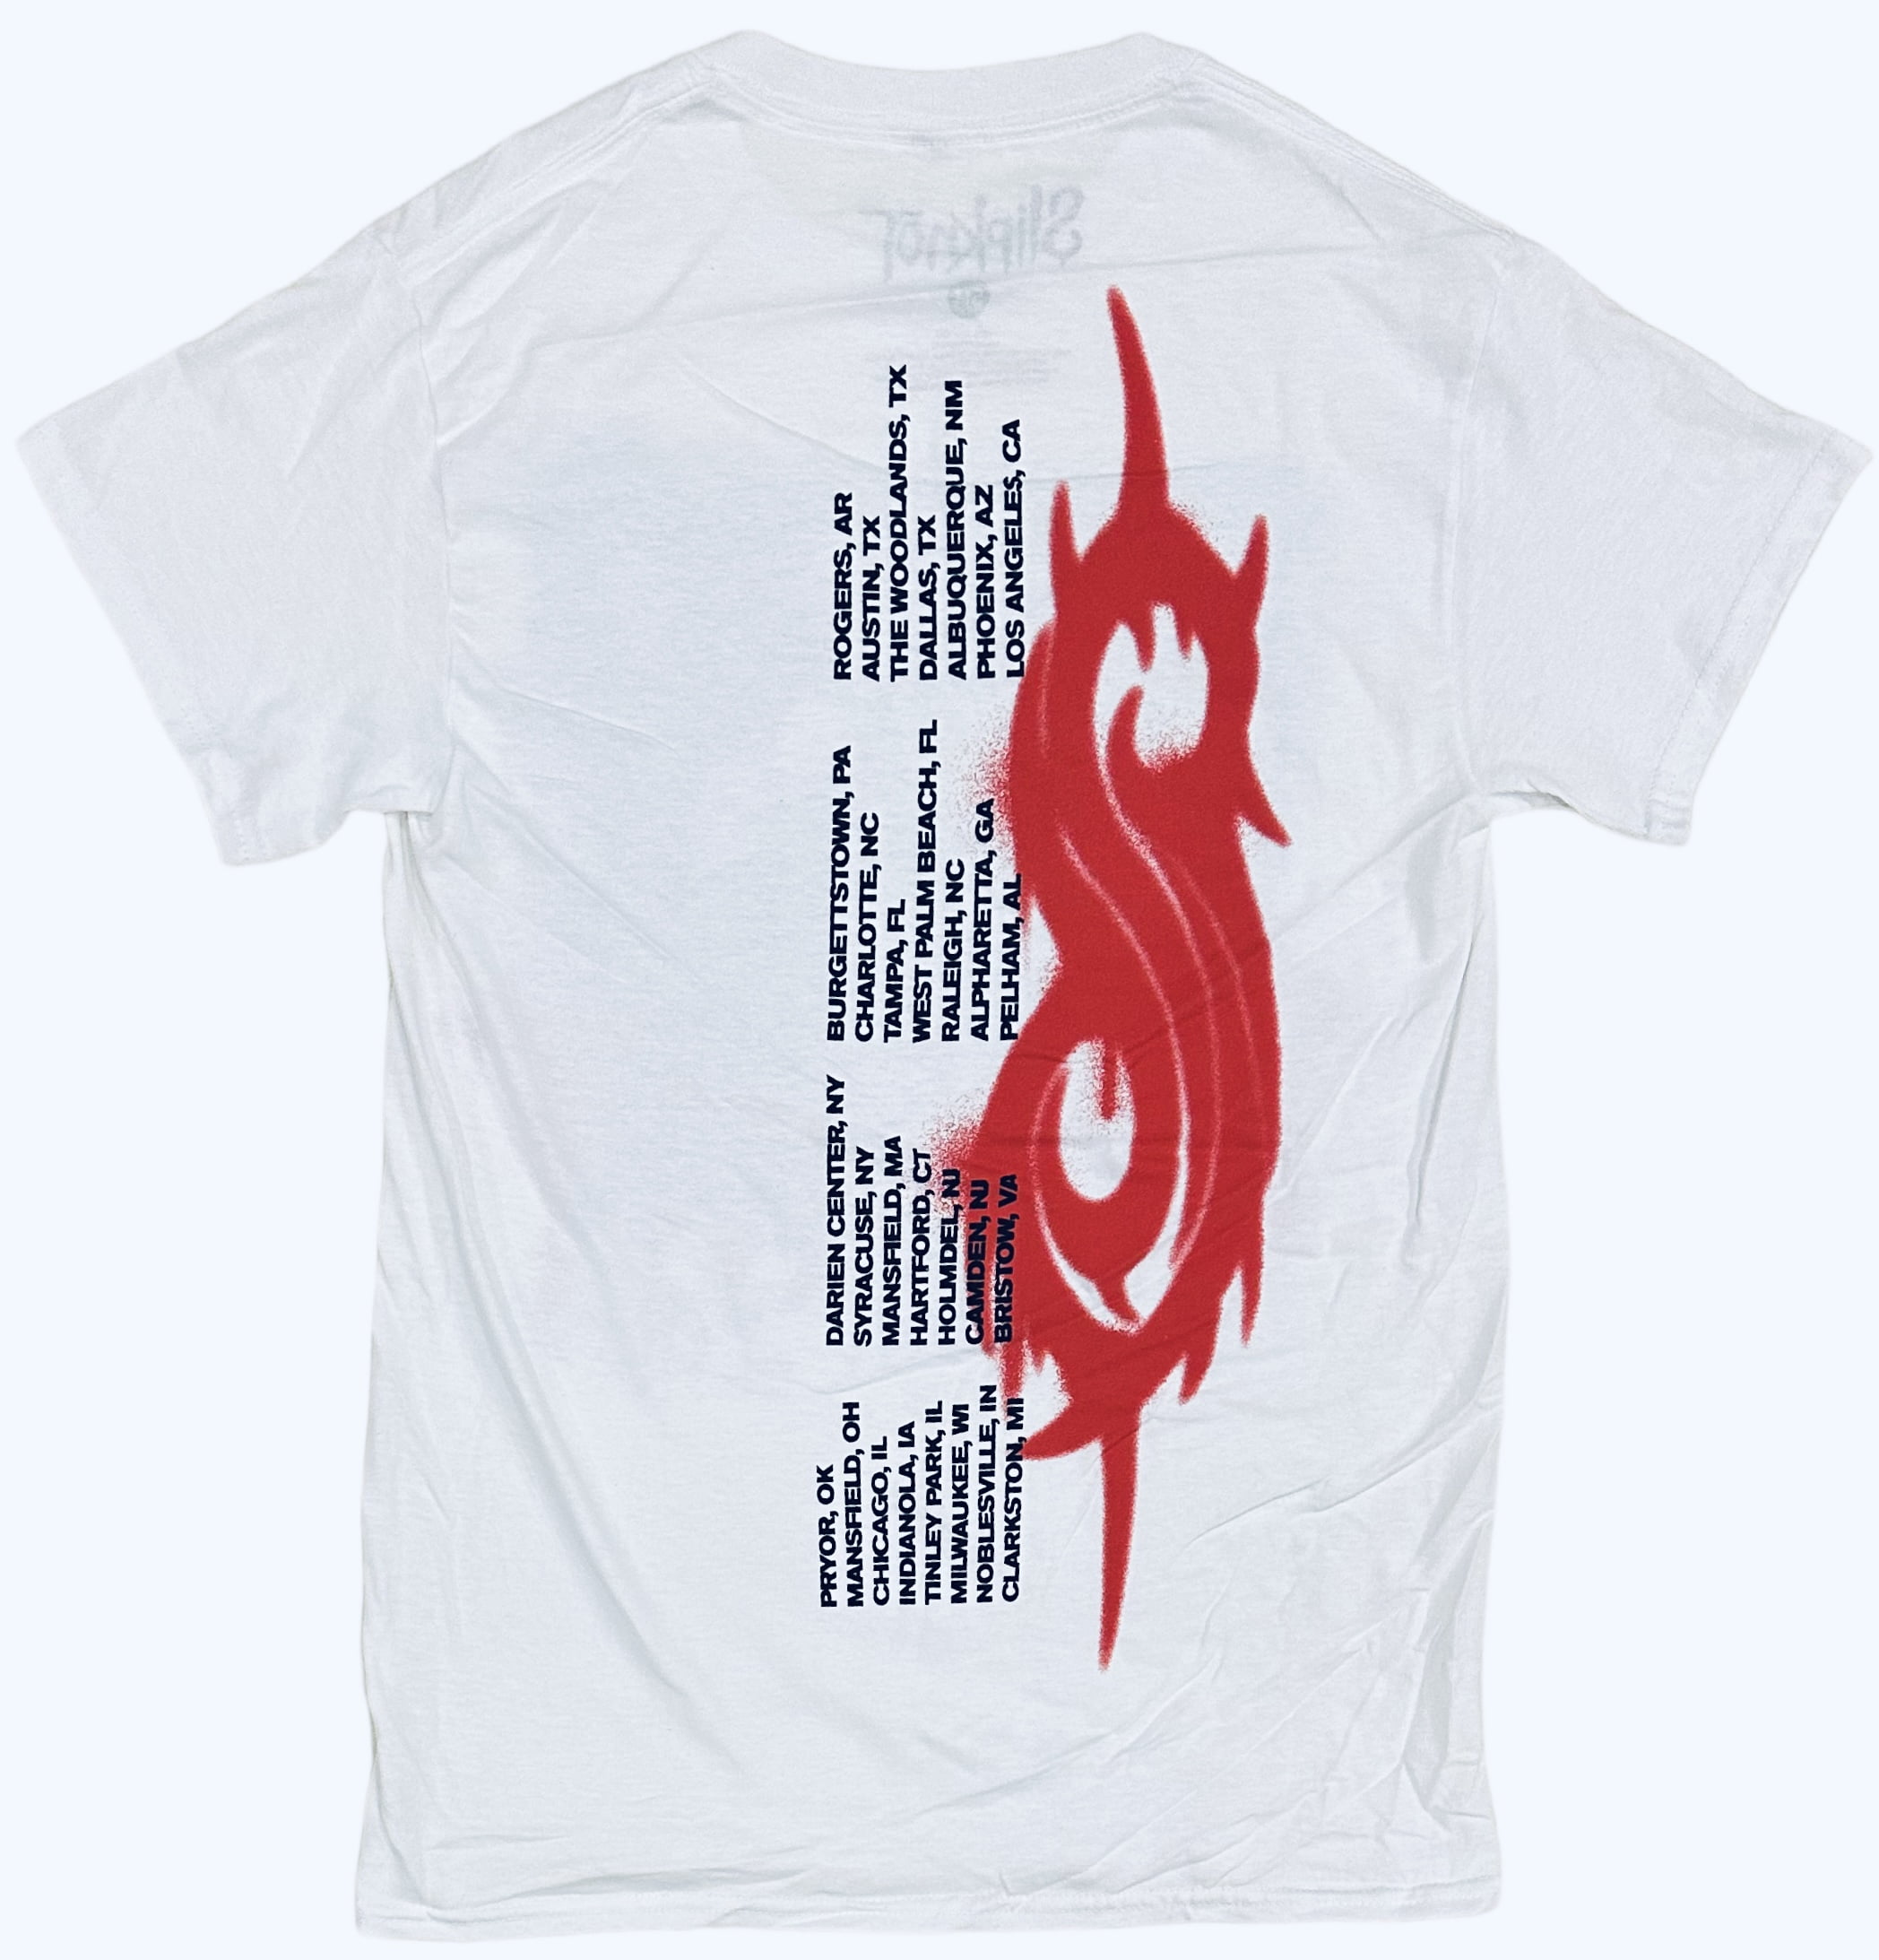 Slipknot Men's Officially Licensed Rare Concert Tour 2021 Knotfest Tee T- Shirt (XXX-Large, White)